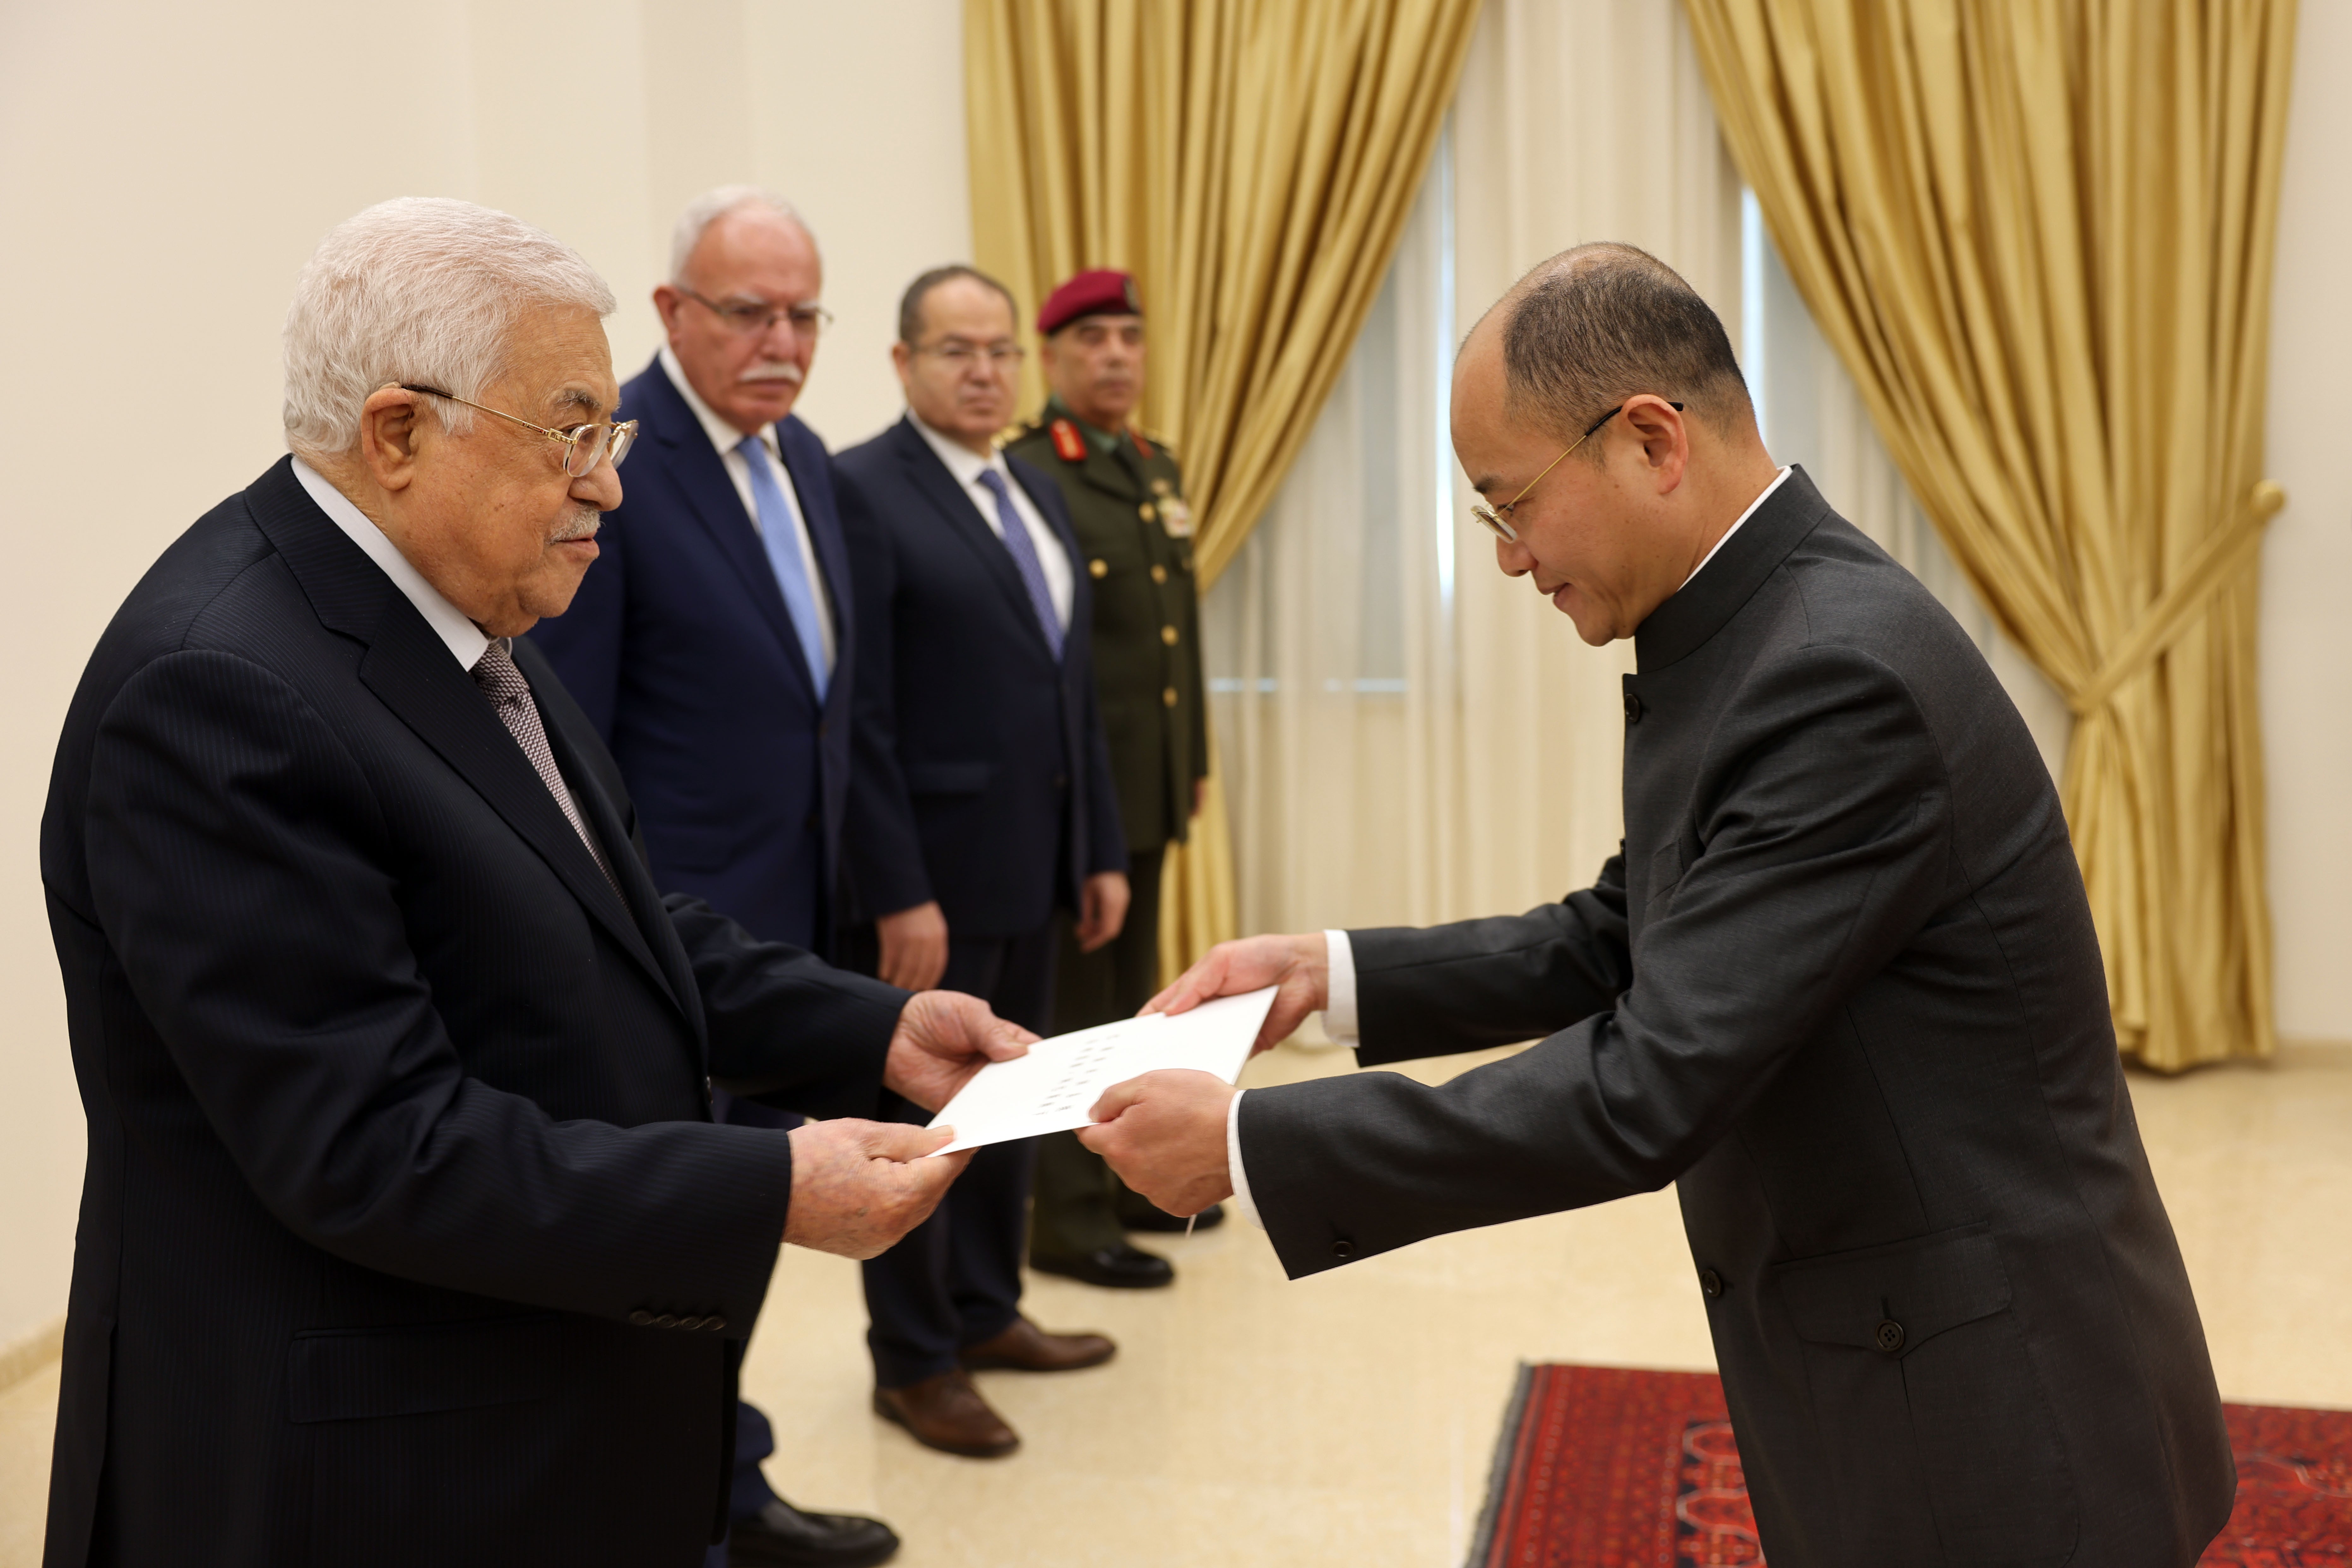 الرئيس يتقبل أوراق اعتماد رئيس مكتب تمثيل جمهورية الصين لدى فلسطين.jpg